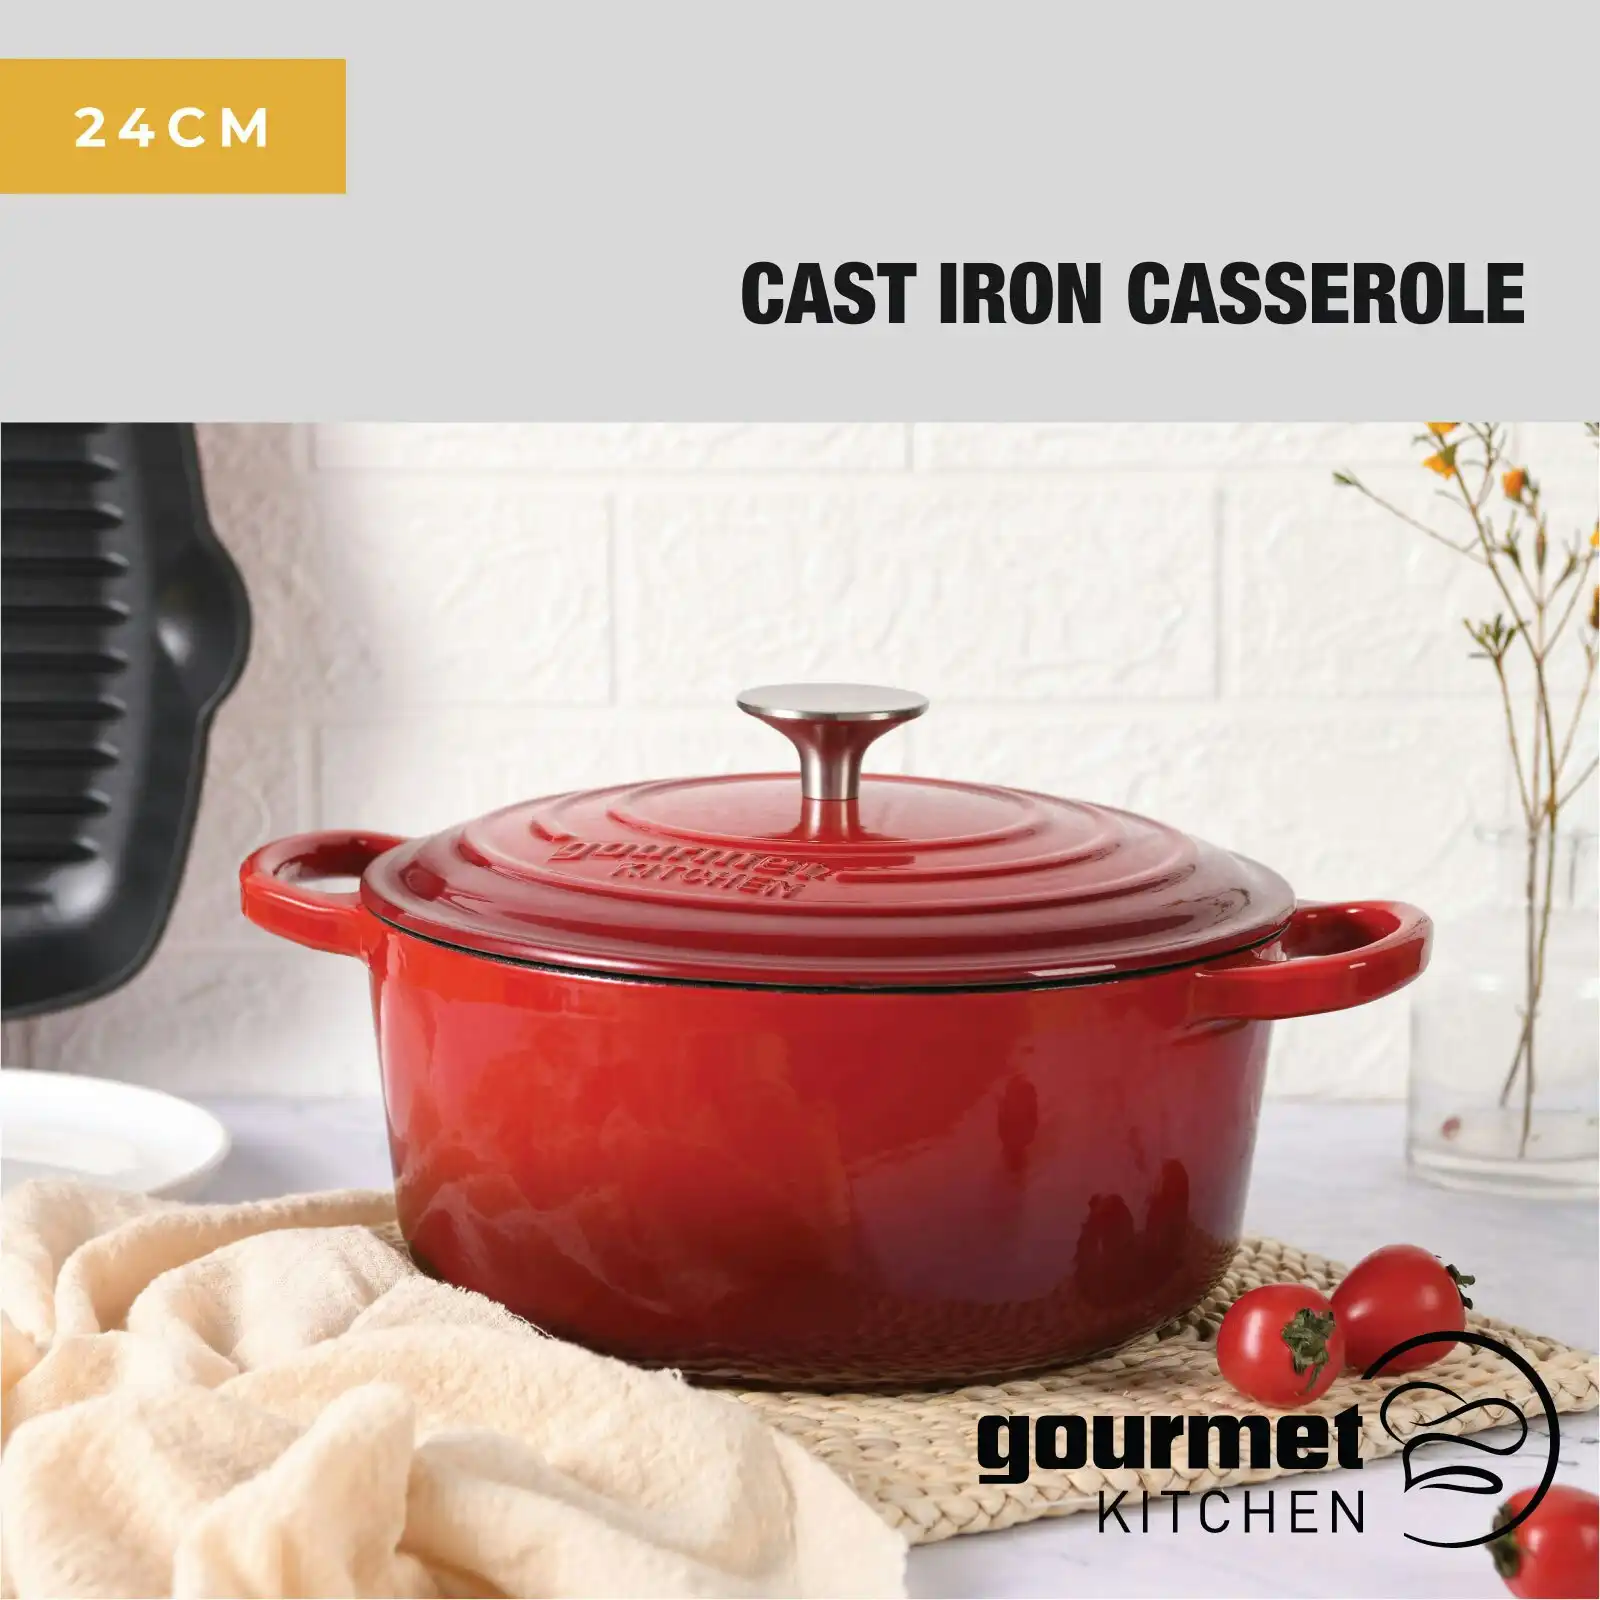 Gourmet Kitchen Cast Iron Casserole 24cm Black Cherry Red